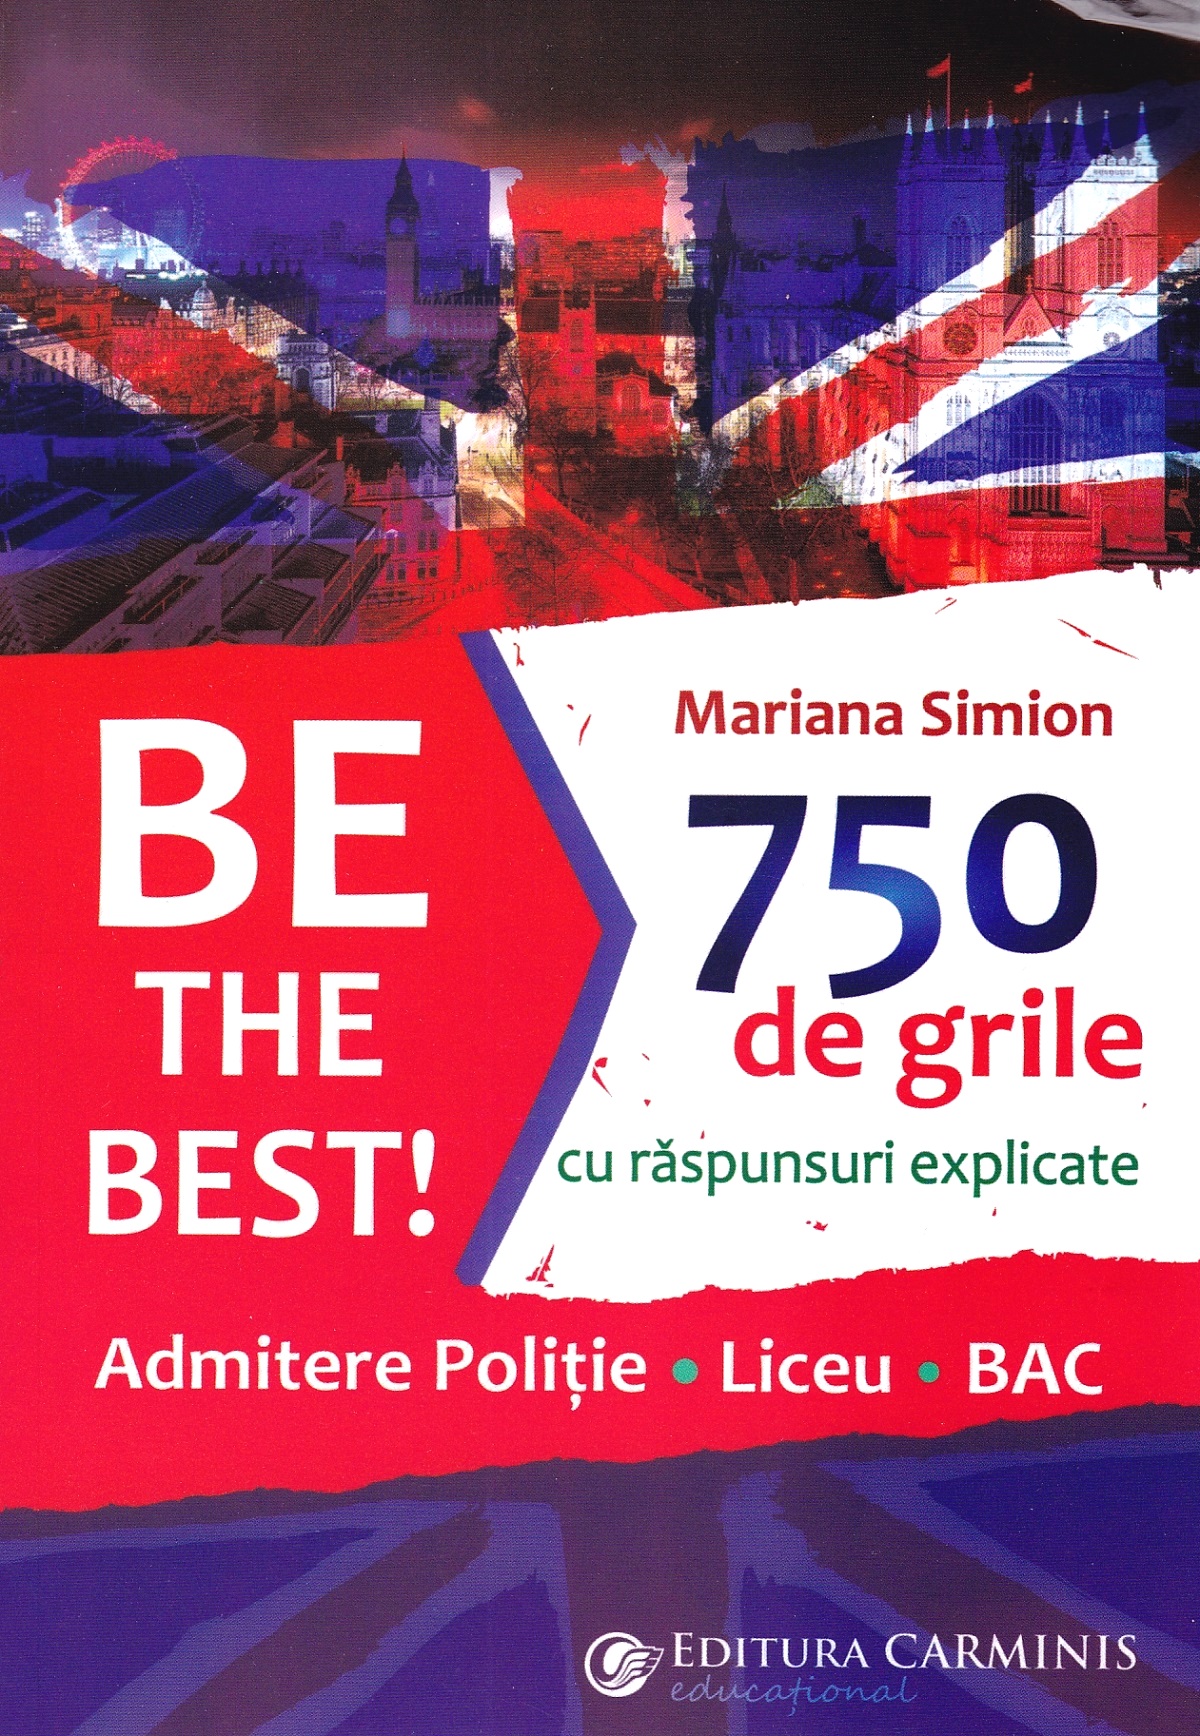 Be the Best! 750 de grile cu raspunsuri explicate - Mariana Simion